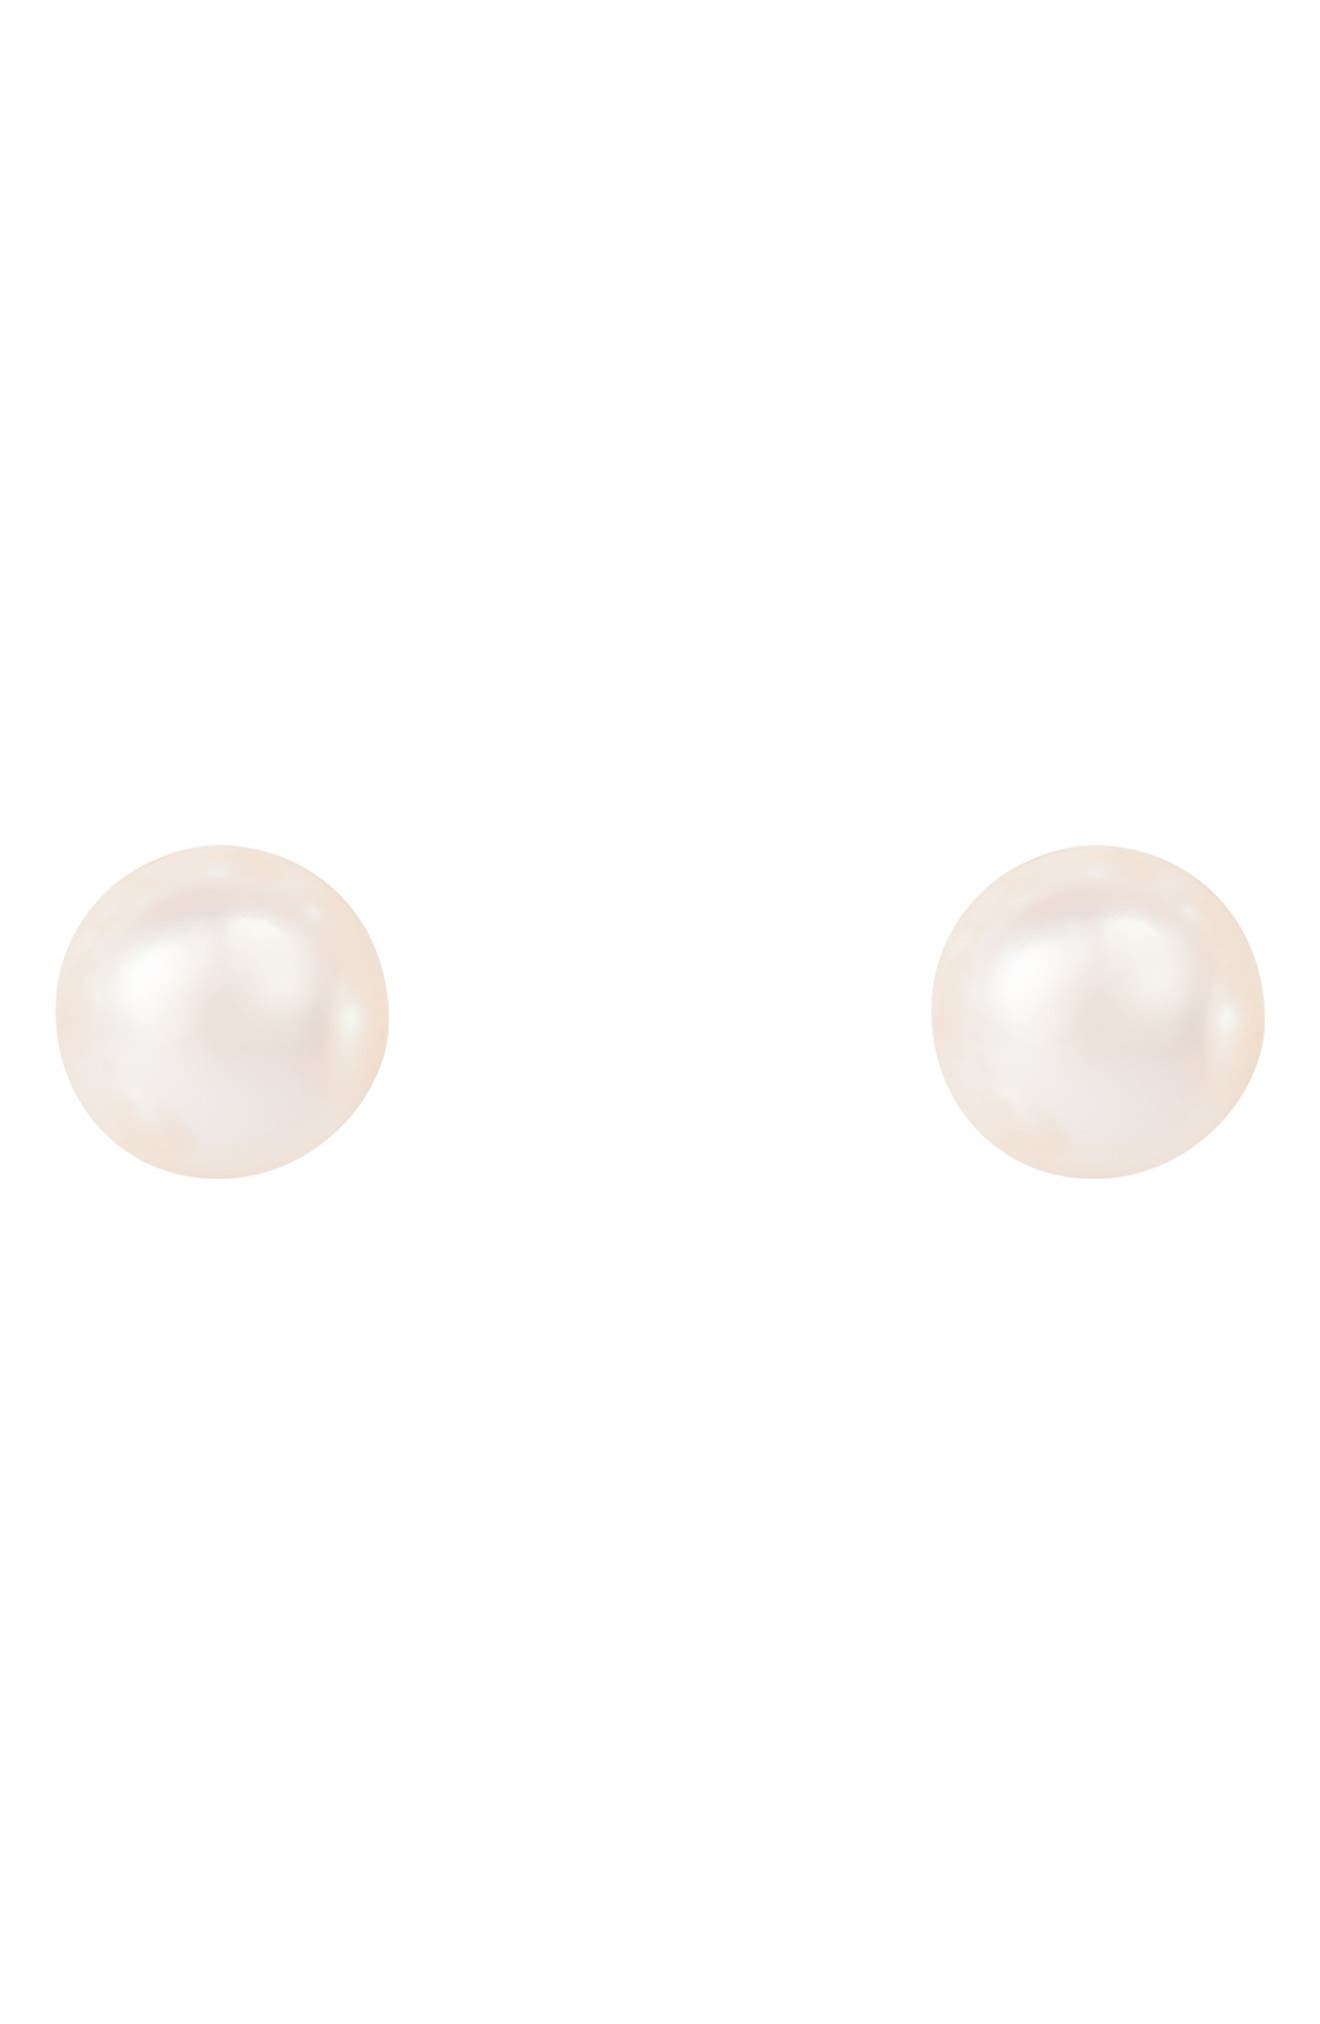 Splendid Pearls 8mm White Freshwater Pearl Round Stud Earrings